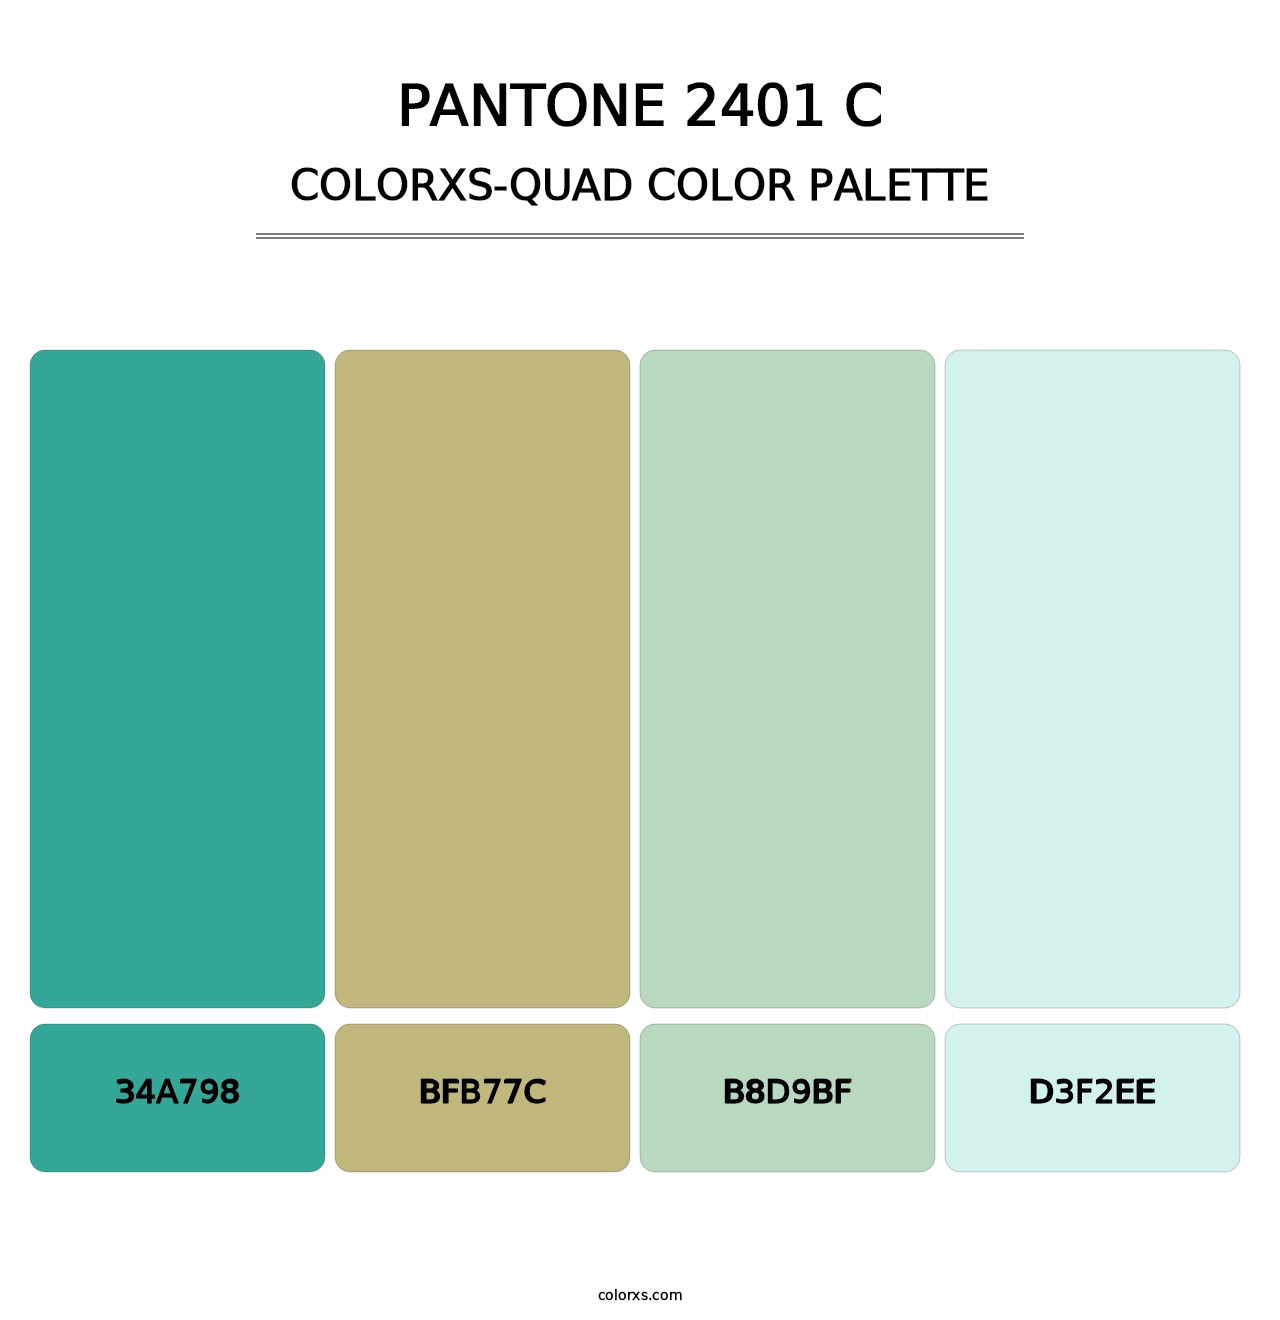 PANTONE 2401 C - Colorxs Quad Palette